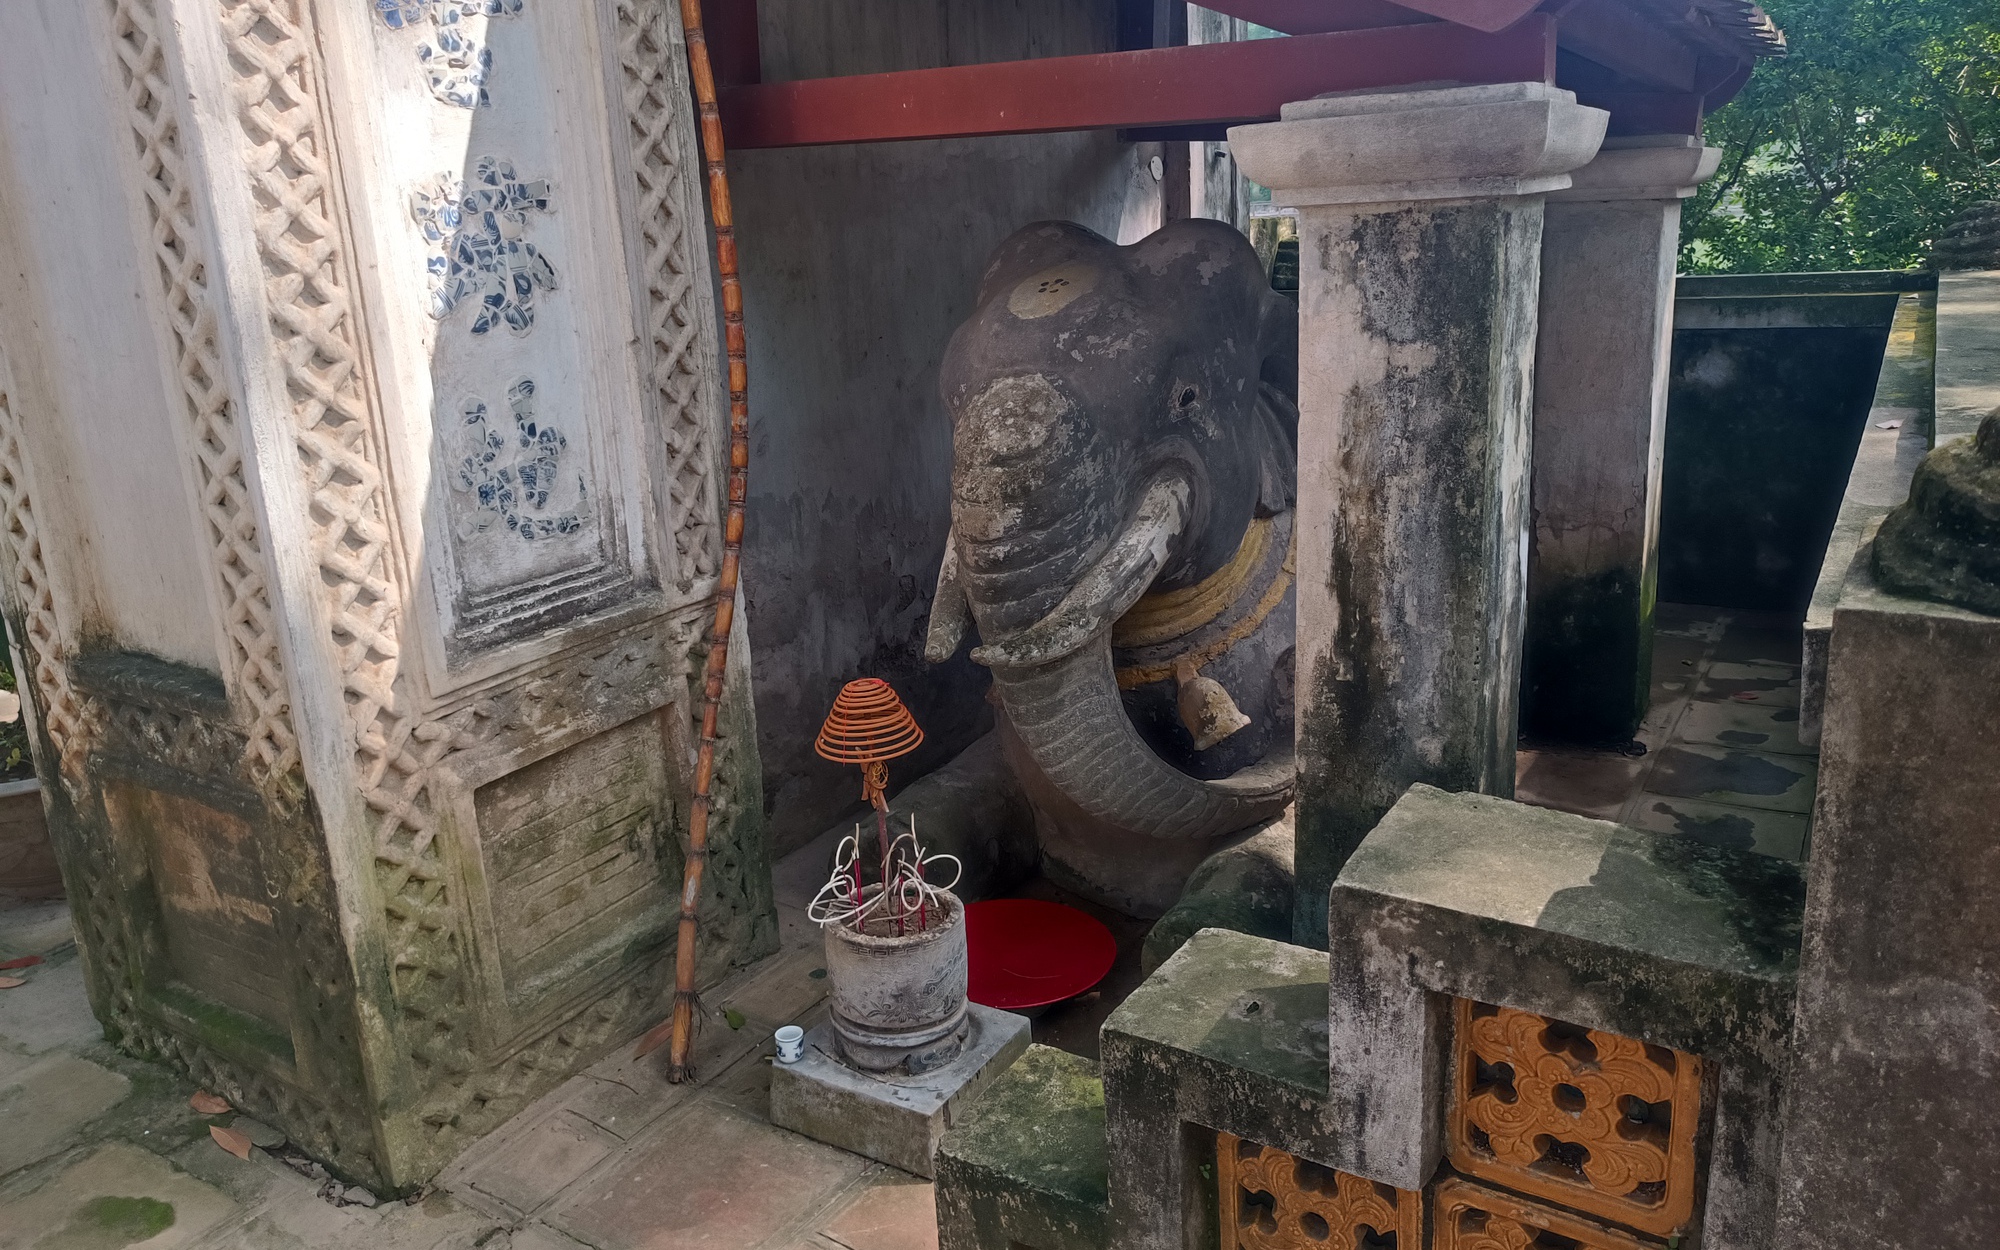 Chuyện ít biết về cặp voi quỳ gối trước đền cổ ở Thủ đô Hà Nội